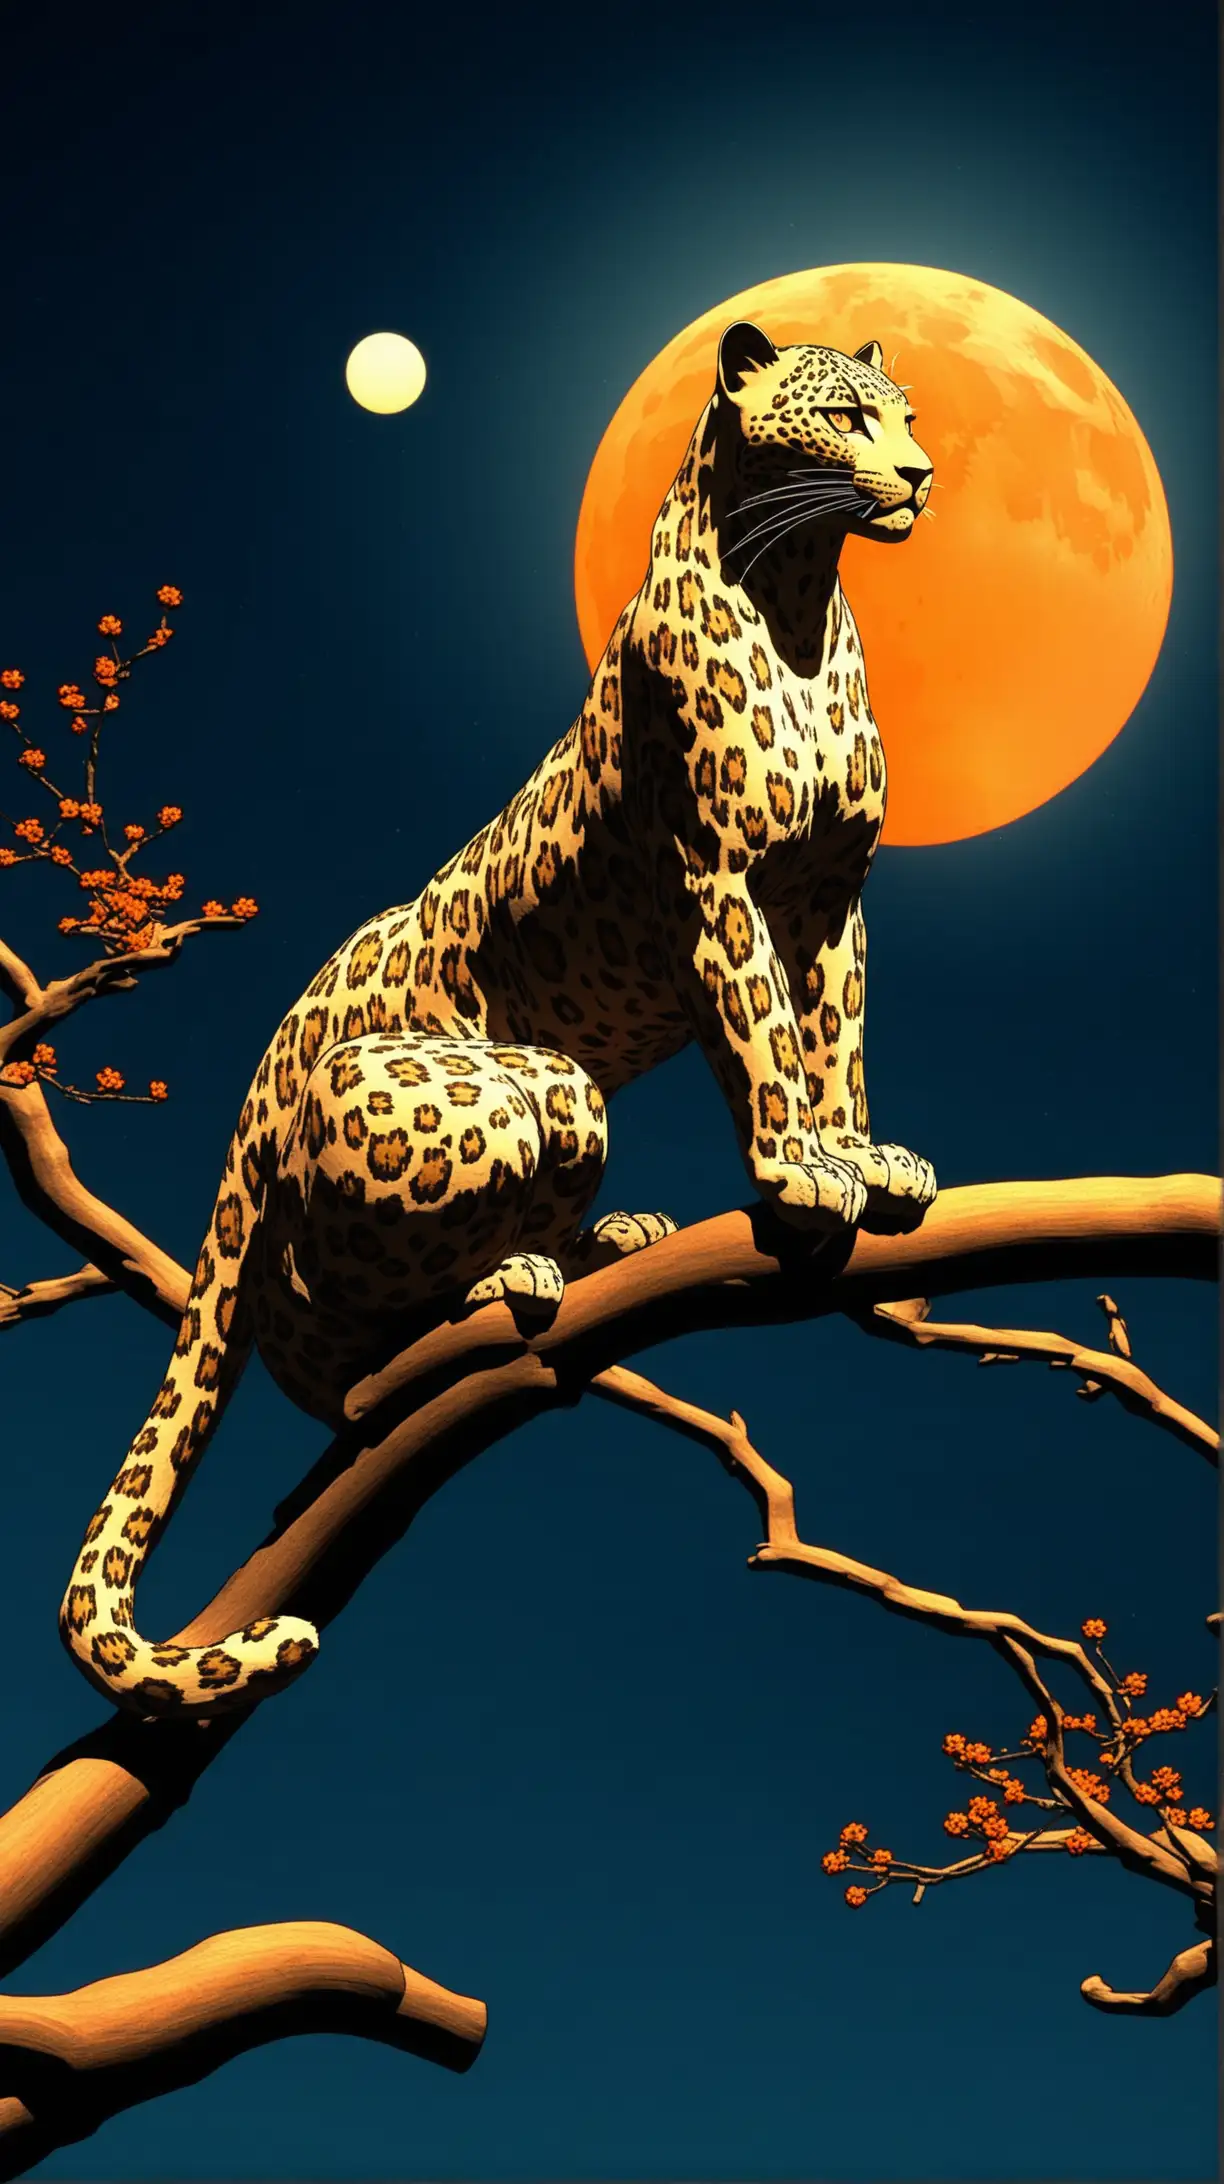 Leopard Resting on Tree Branch Under Full Moon UkiyoE Style 3D Render